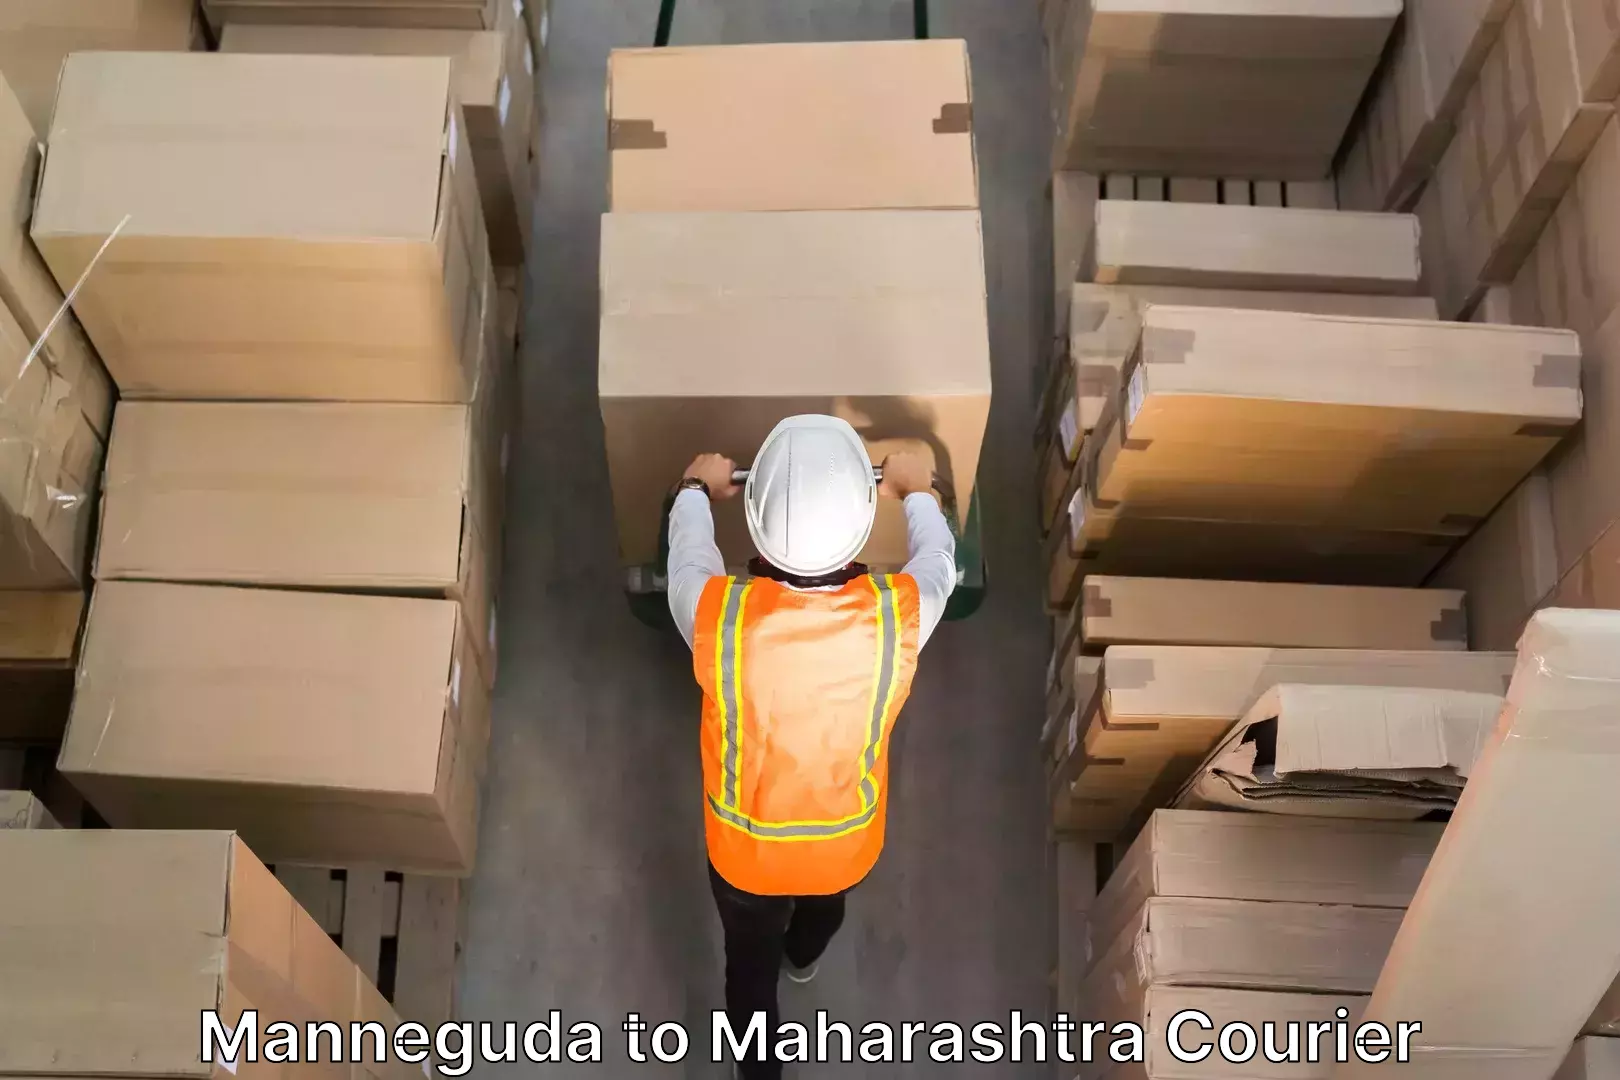 Furniture delivery service Manneguda to Maharashtra